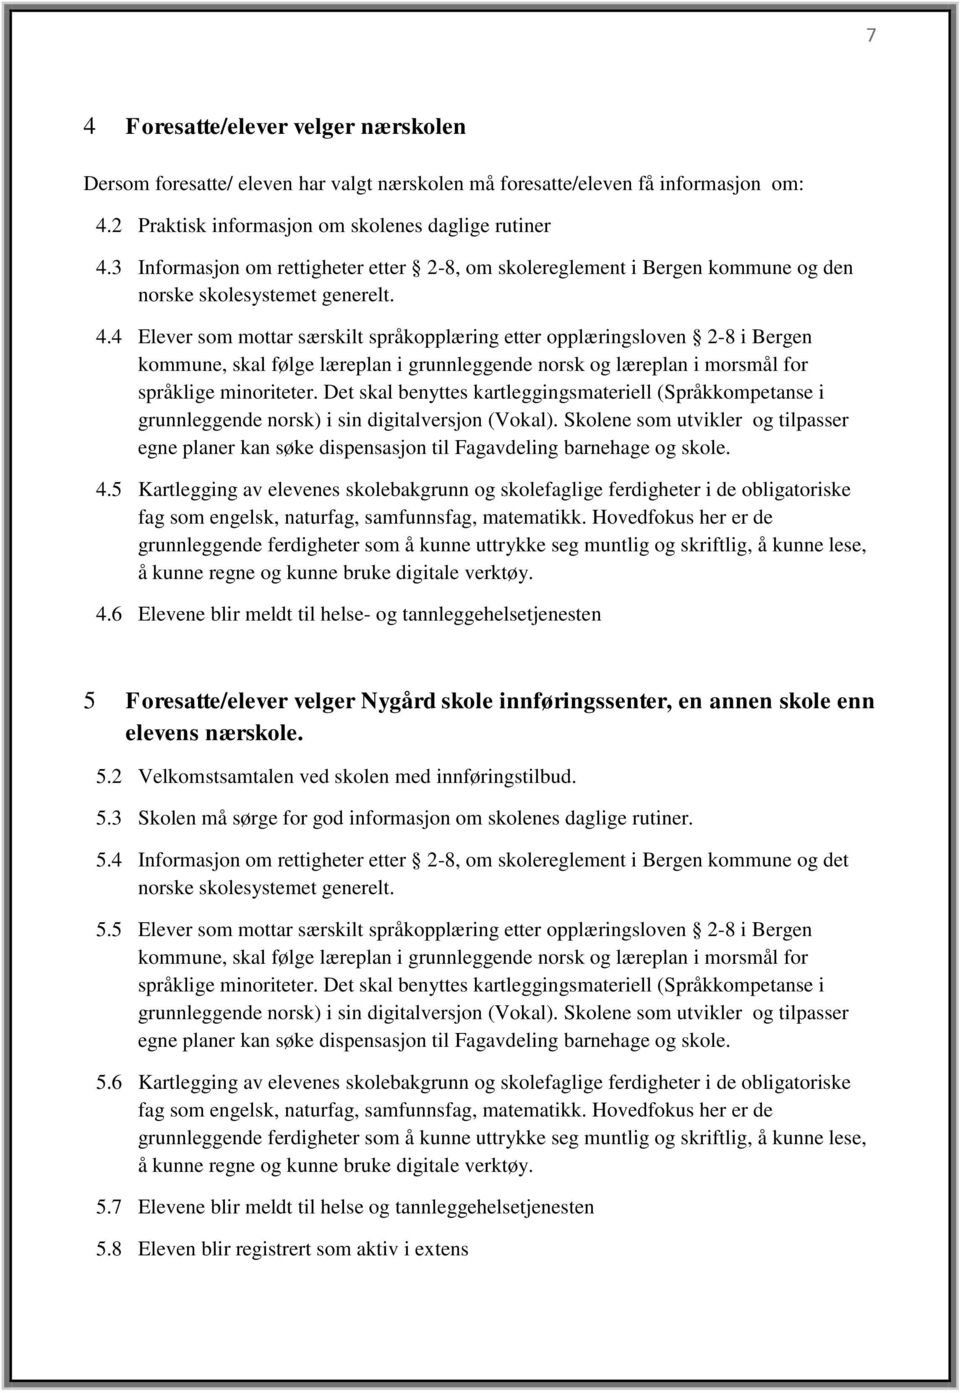 4 Elever som mottar særskilt språkopplæring etter opplæringsloven 2-8 i Bergen kommune, skal følge læreplan i grunnleggende norsk og læreplan i morsmål for språklige minoriteter.